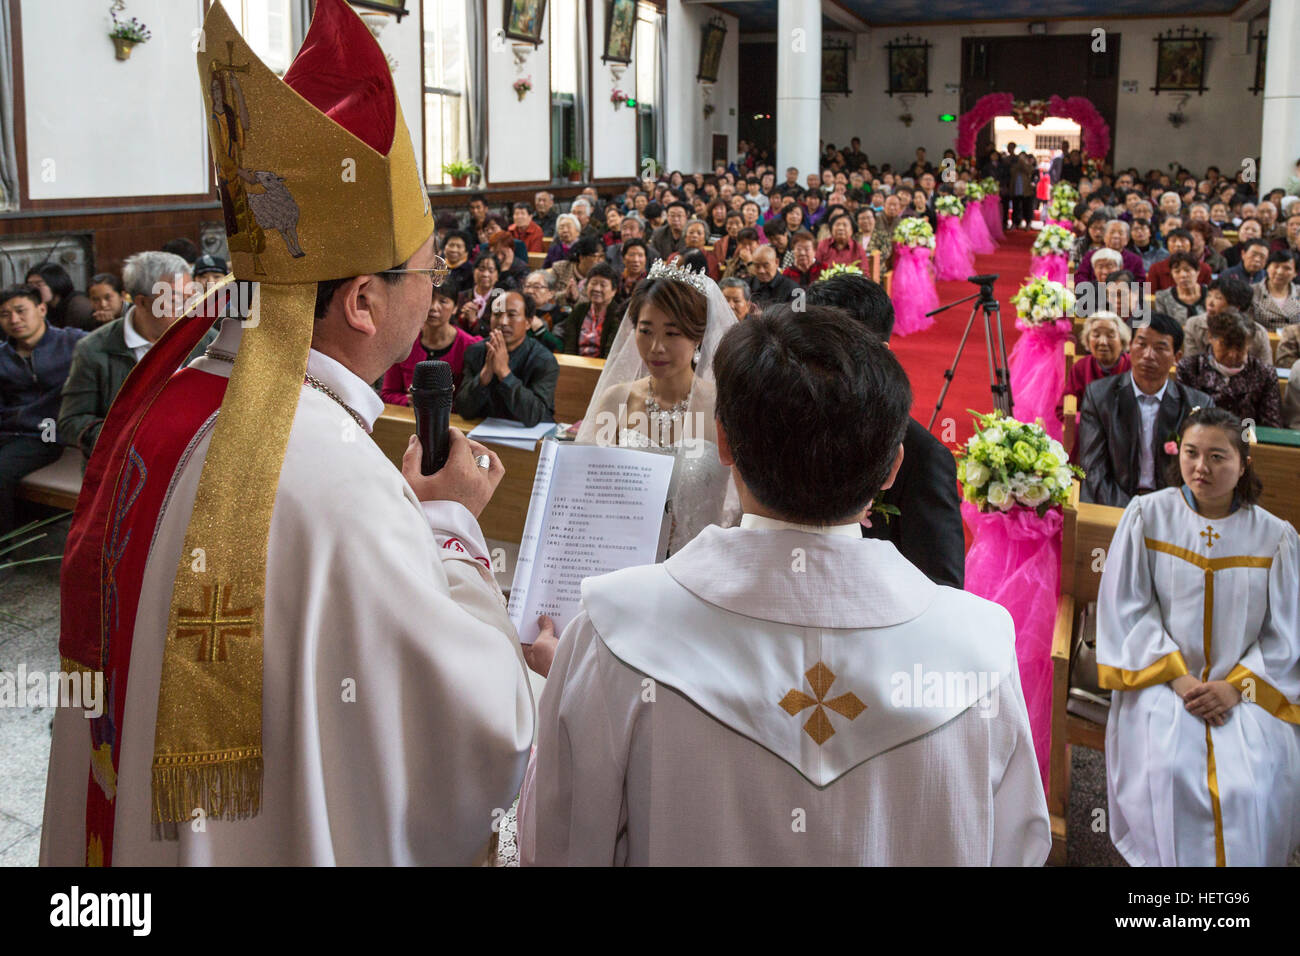 Wedding ceremony, Catholic church, Yinchuan, Ningxia, China Stock Photo